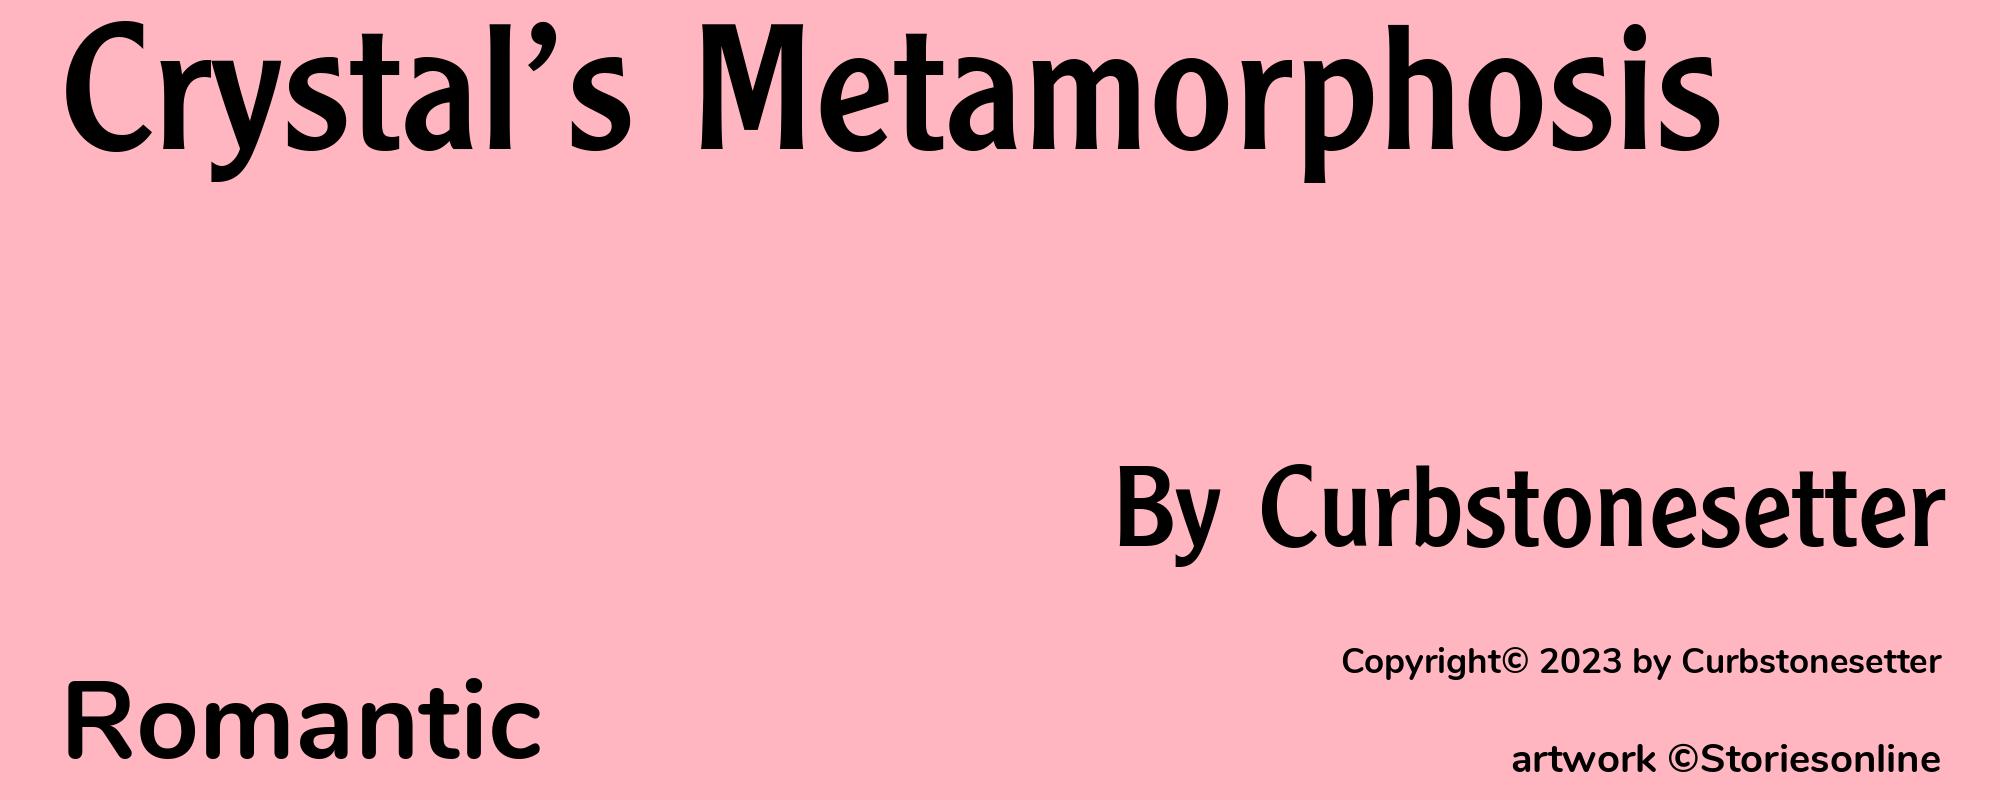 Crystal’s Metamorphosis - Cover